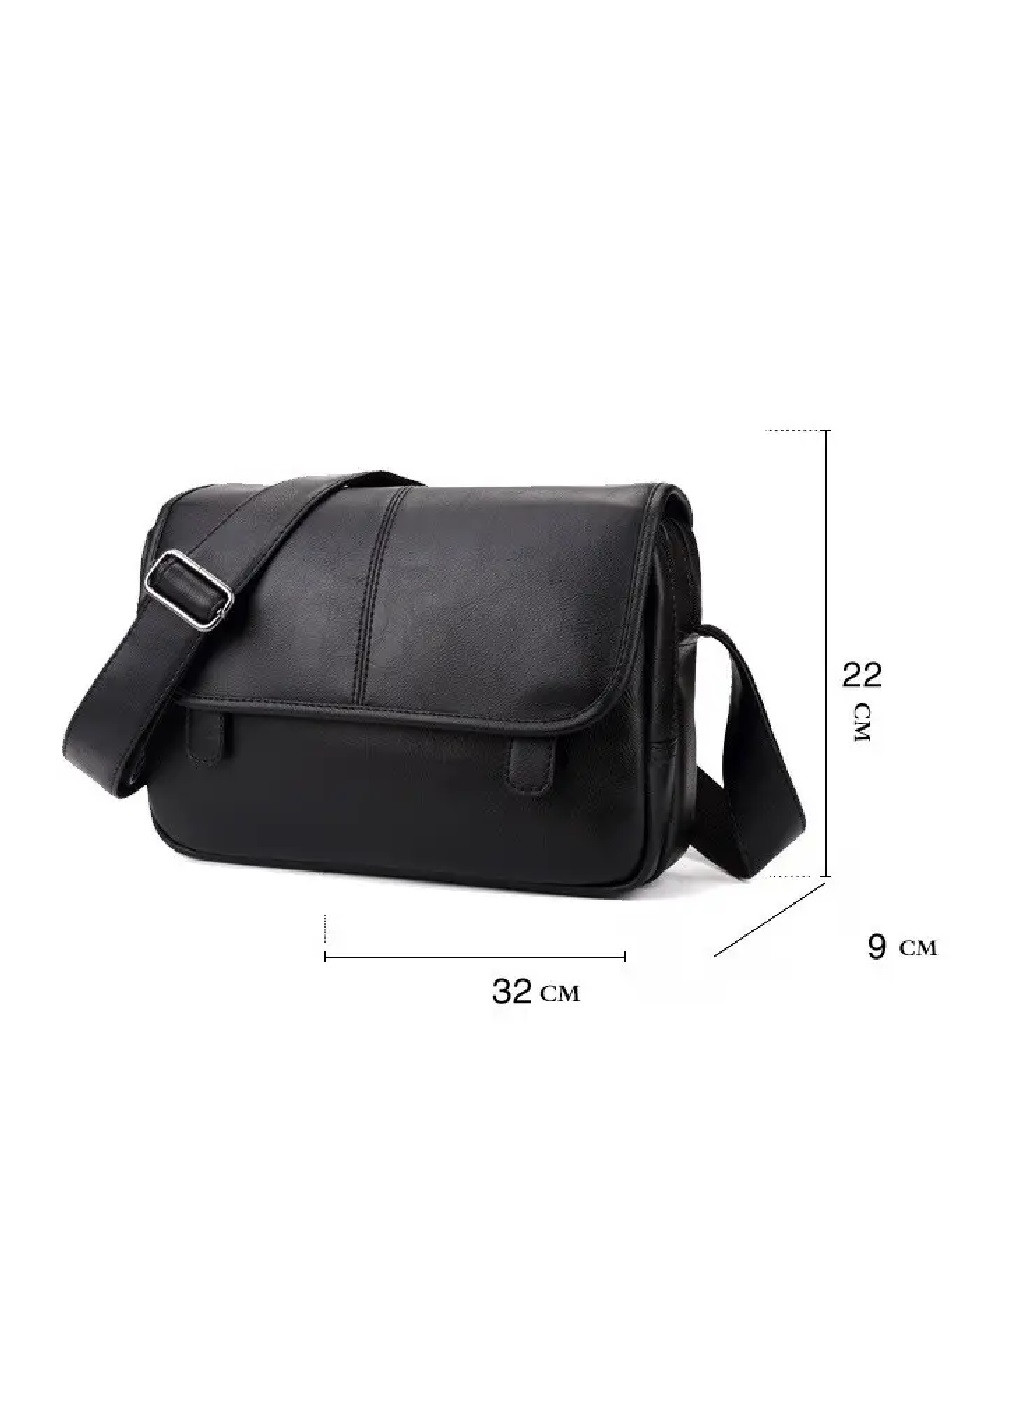 Мужская стильная практичная компактная городская повседневная сумка через плечо из экокожи 30х22х10 см (475523-Prob) Коричневая Unbranded (268463128)